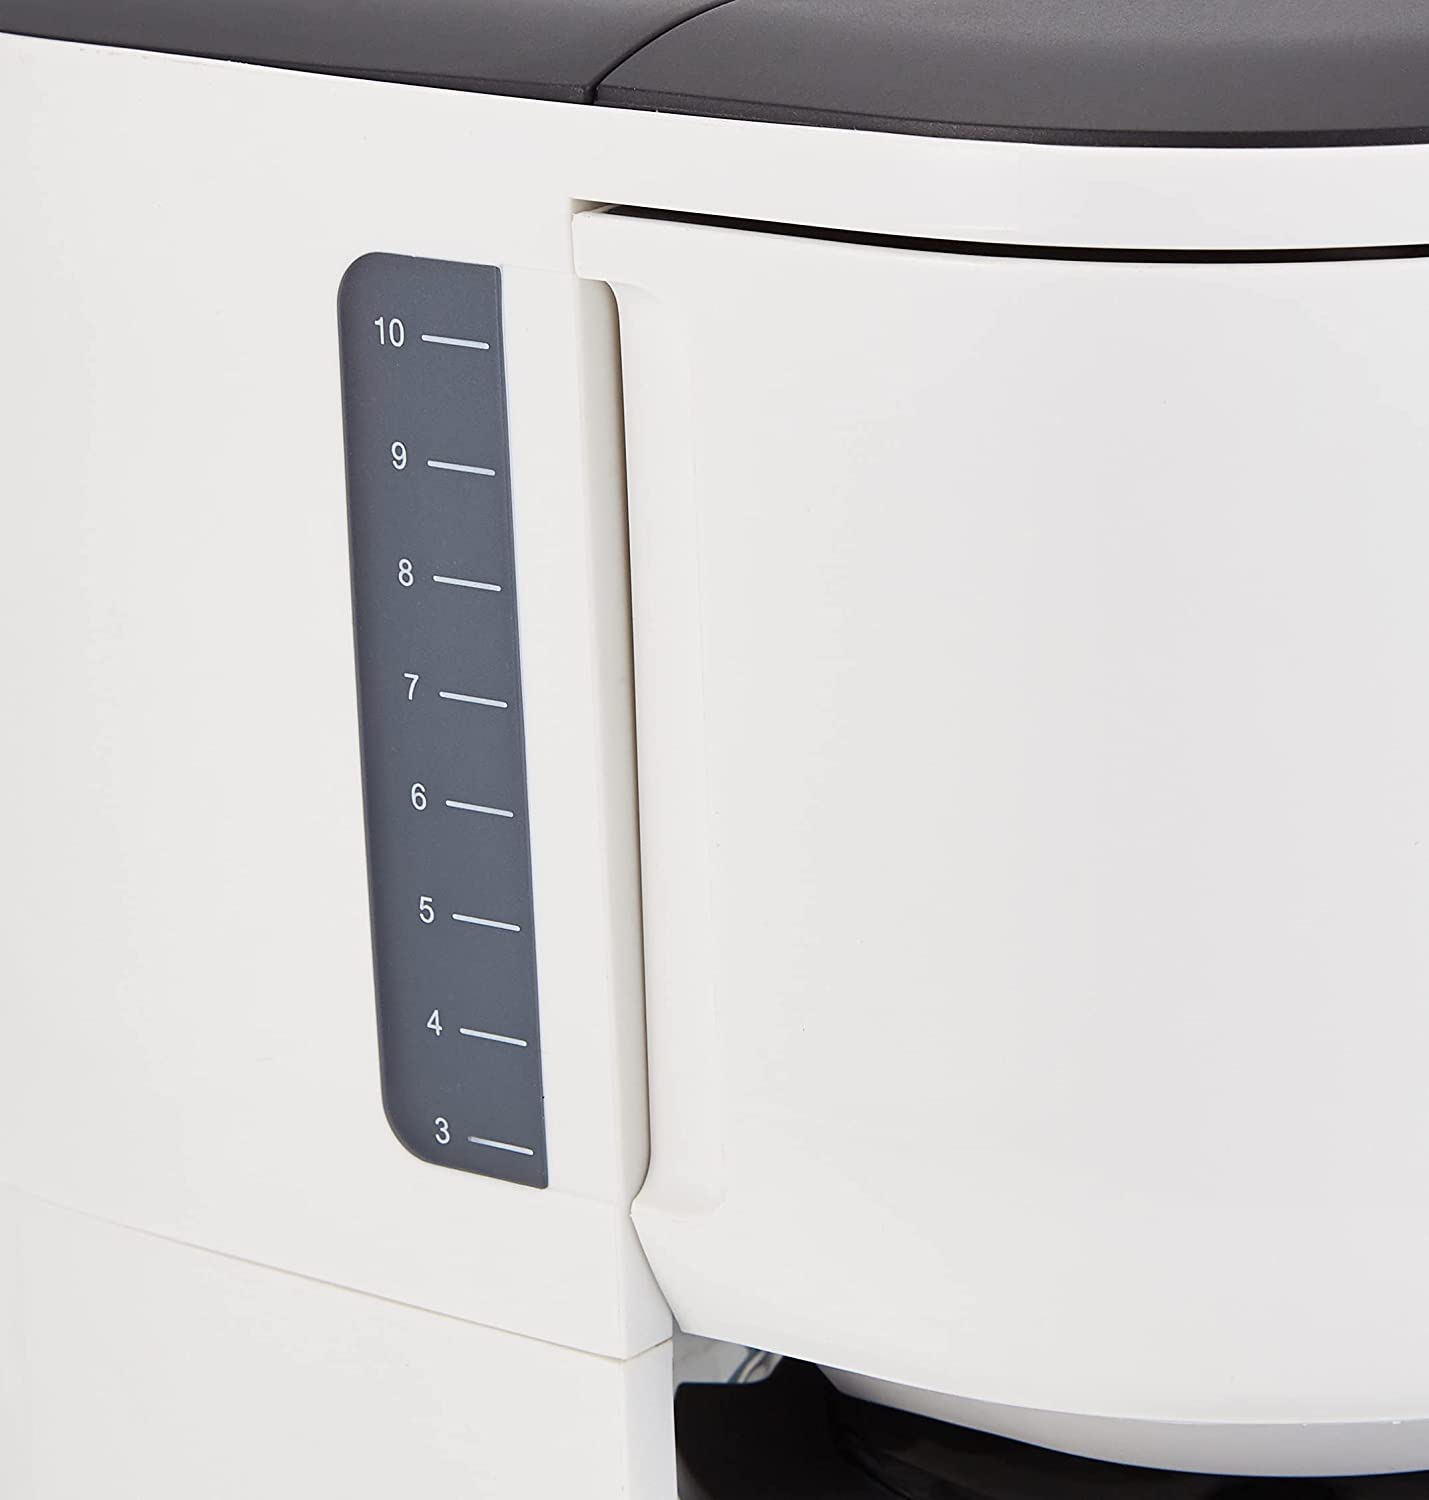 Braun PurEase Coffee Machine 1000 Watt White - KF3100WH | Kitchen Appliance | Halabh.com